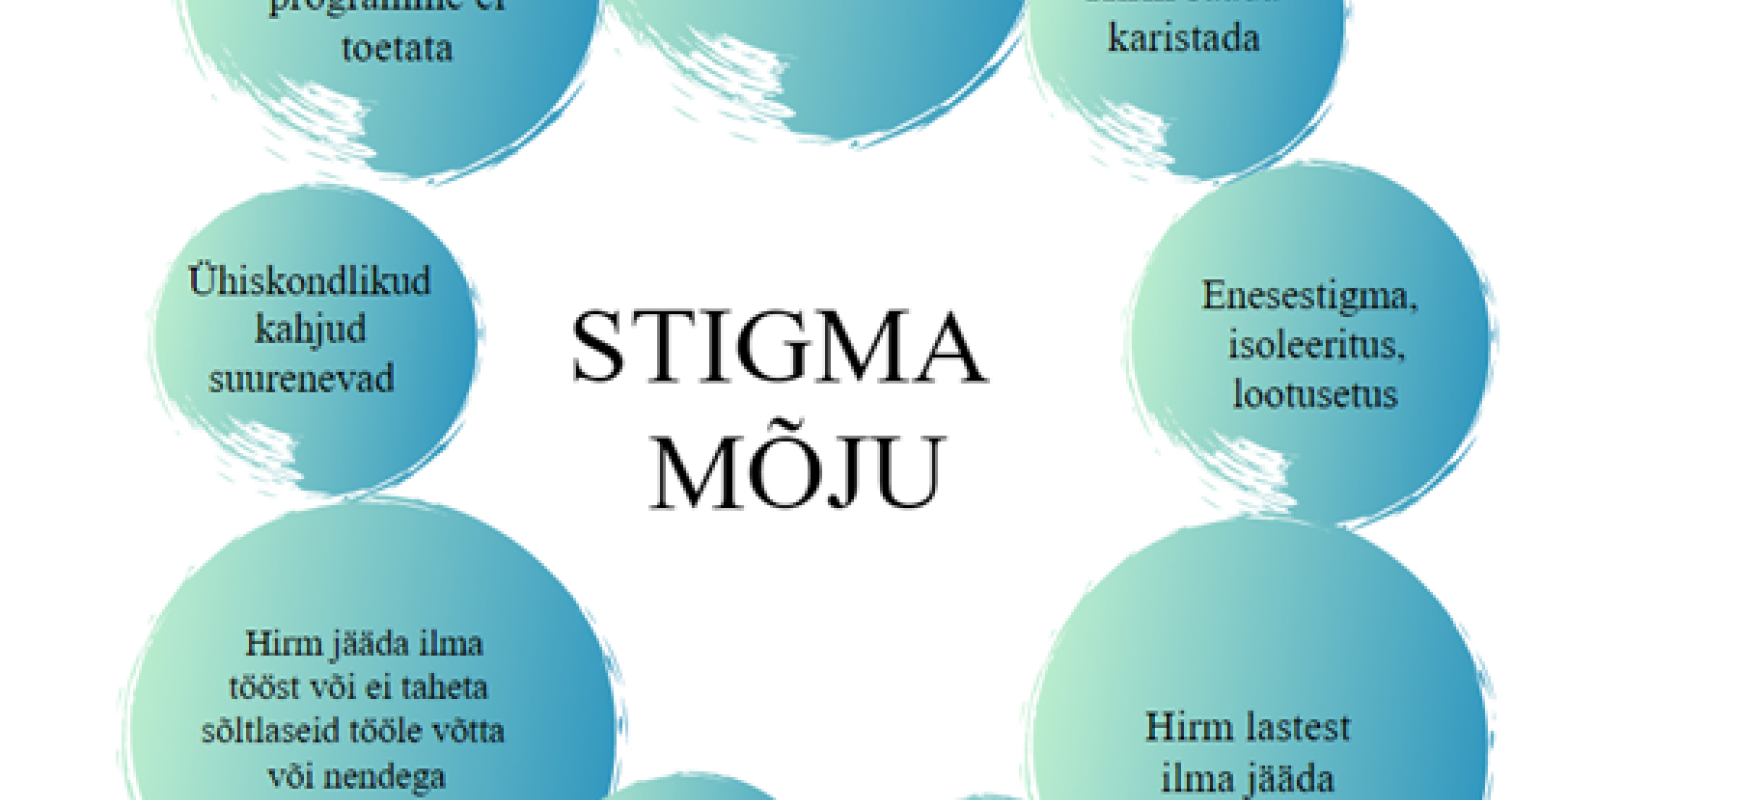 Stigma mõju joonis